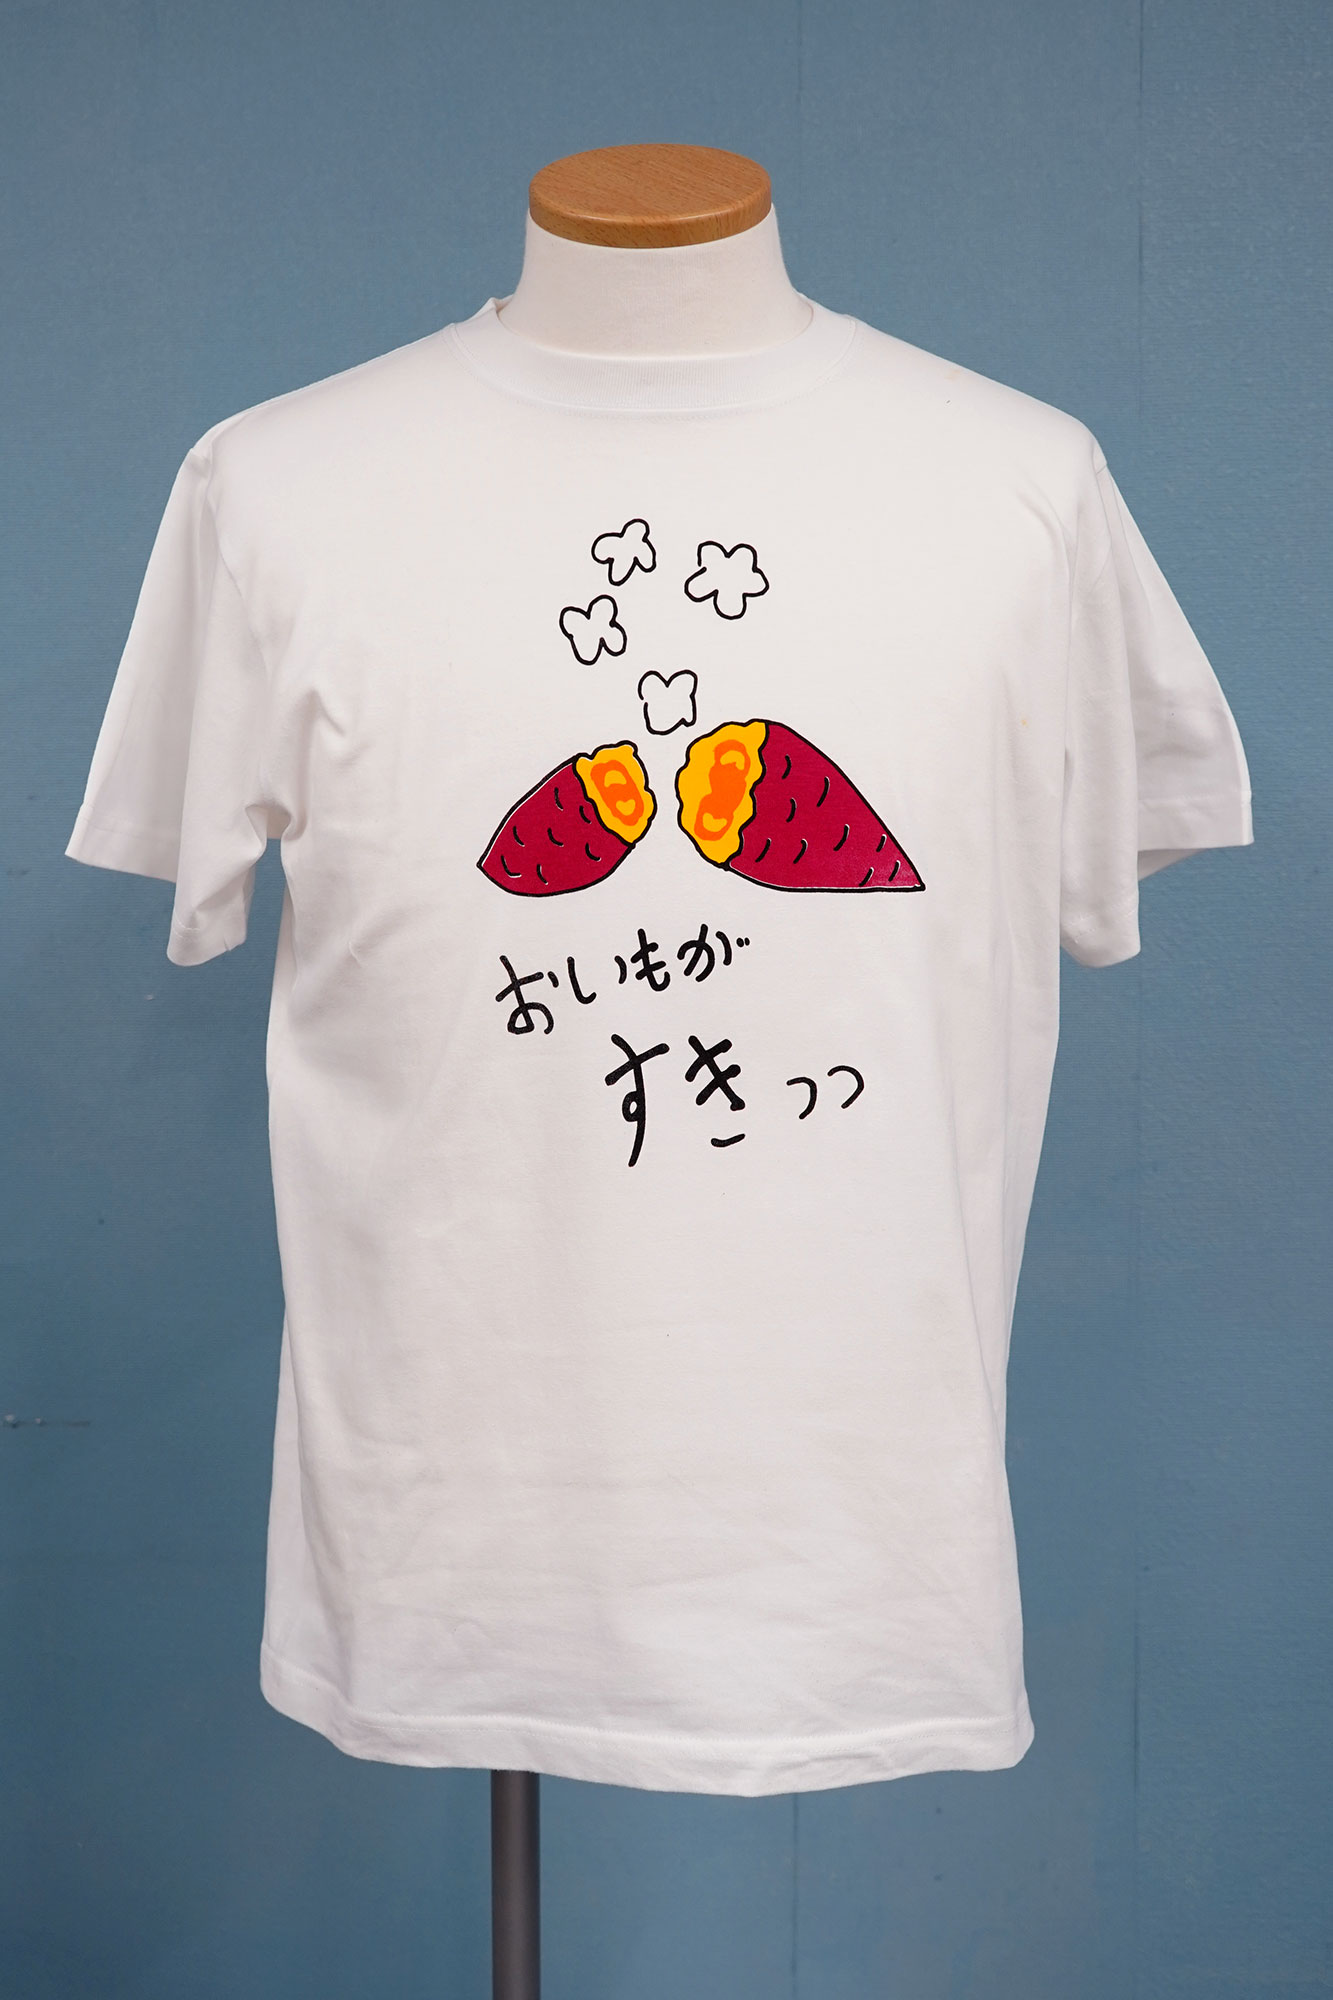 Sweet potato T-shirts